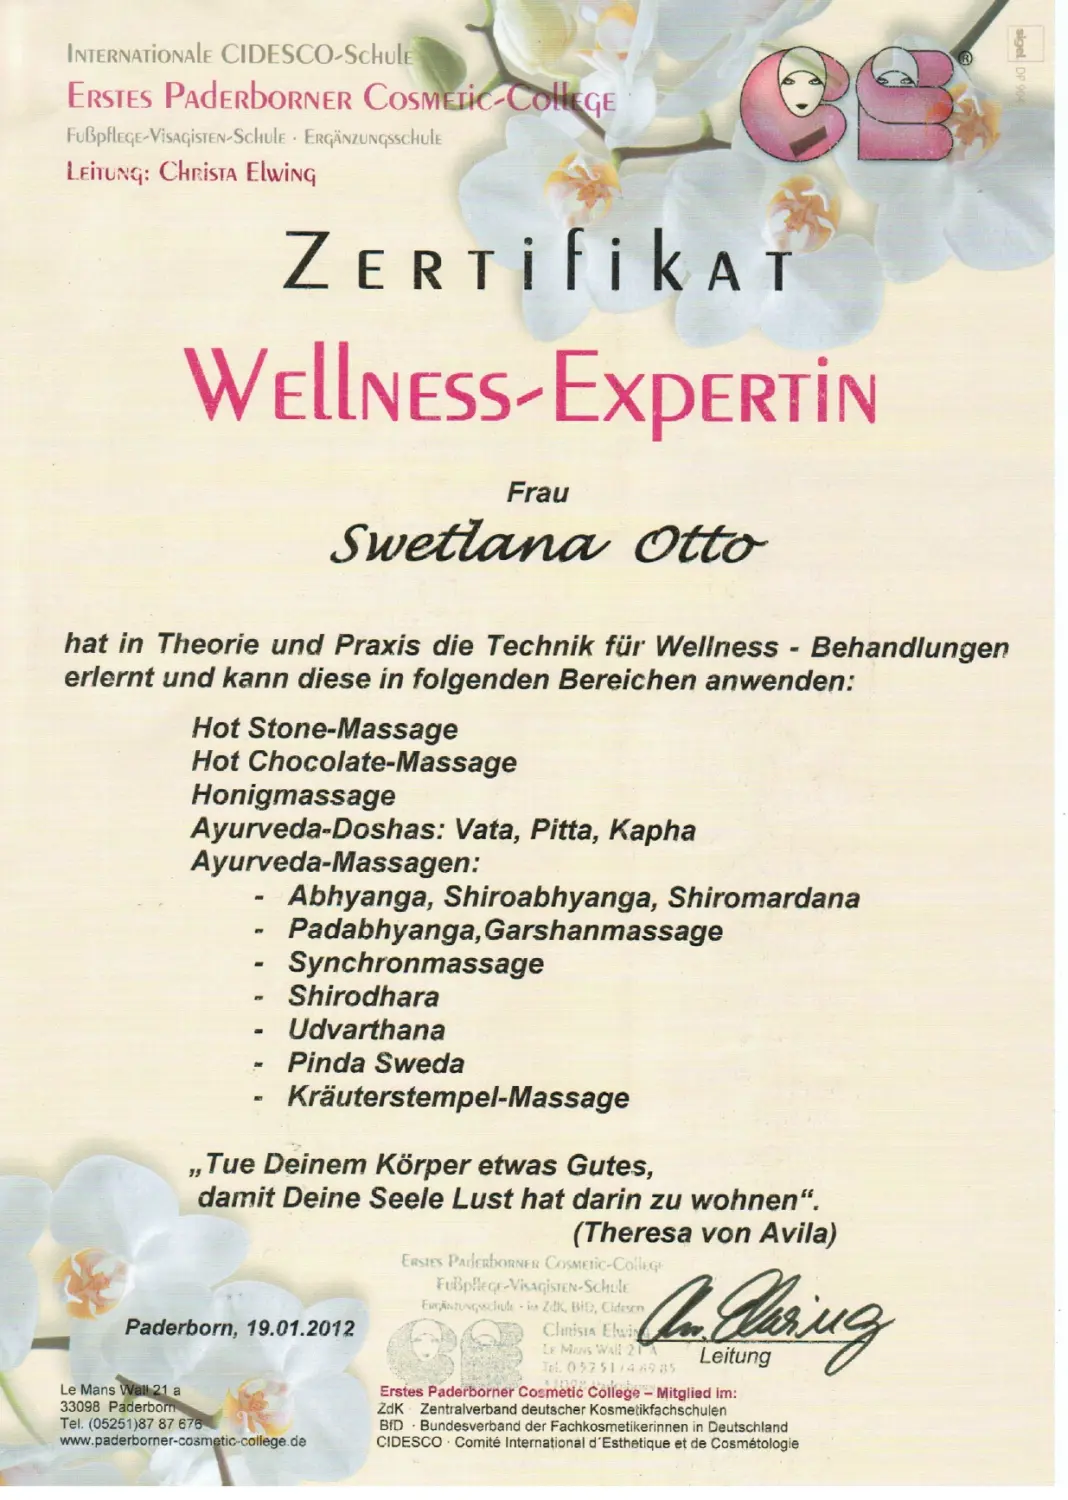 Beauty-Residenz Paderborn Wellness Expertin Zertifikat